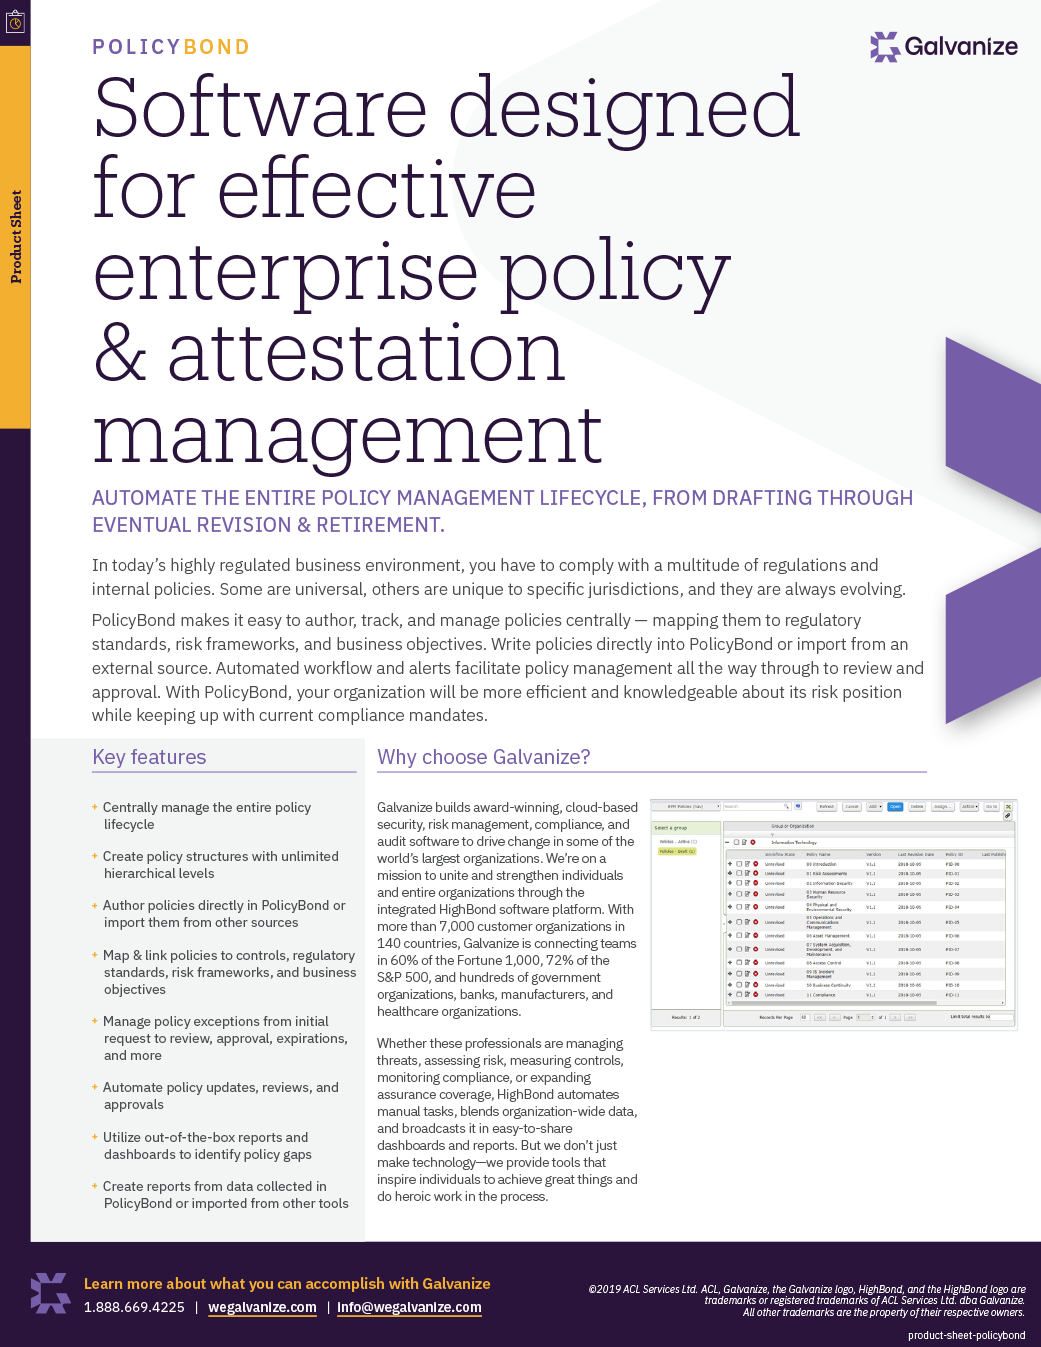 Software designed for effective enterprise policy & attestation management